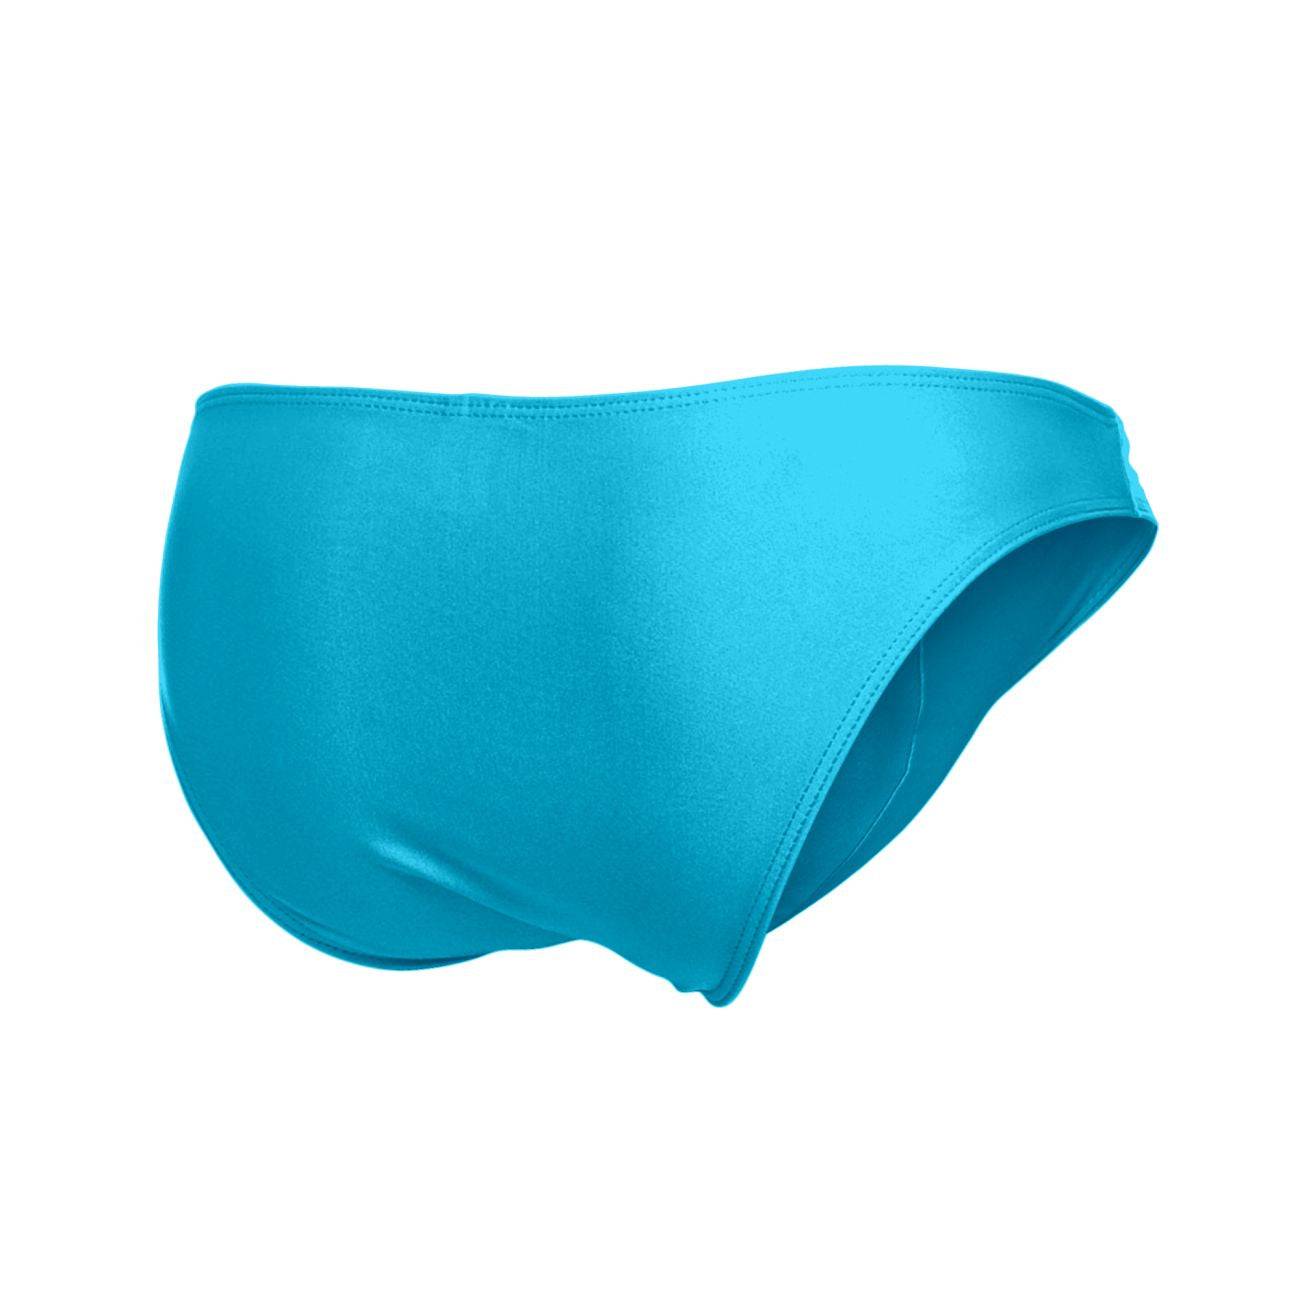 JUSTIN+SIMON XSJ01 Classic Silky Bikini Turquoise Plus Sizes